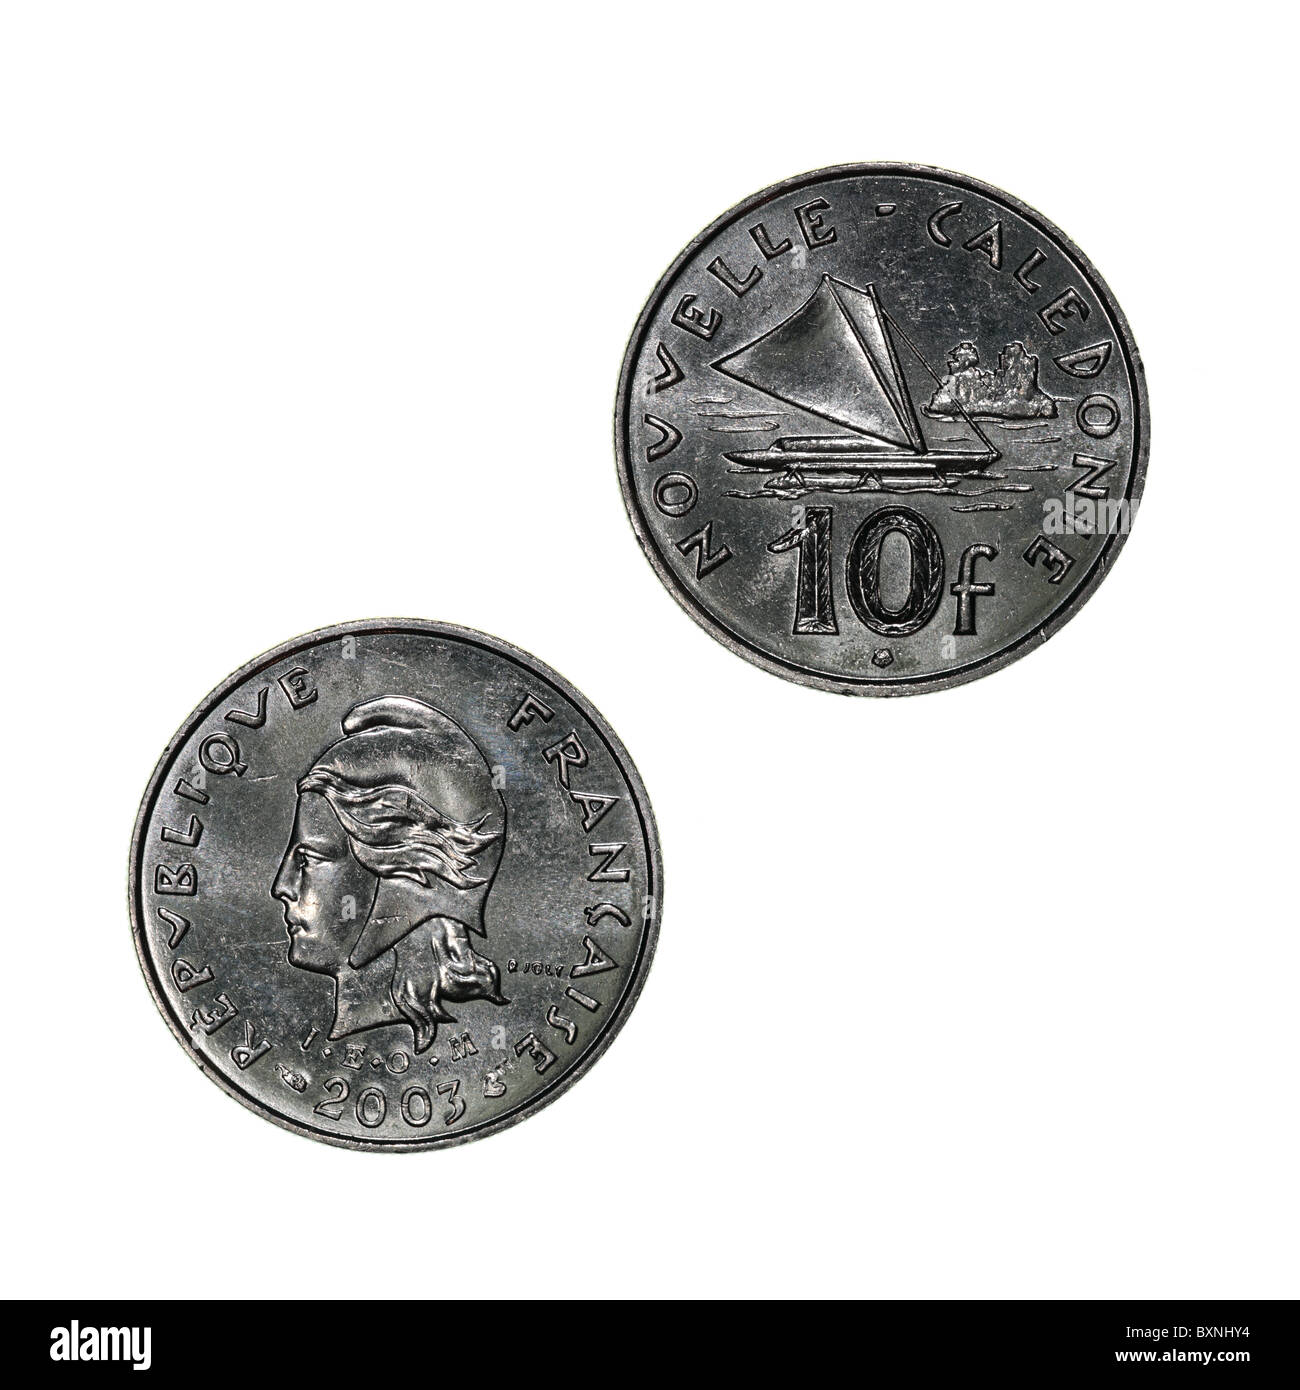 Neukaledonien - 10 Francs Münze mit Mariannekopf (obverse) und einem auslegernden Kanu mit Segelset (rückwärts) Stockfoto